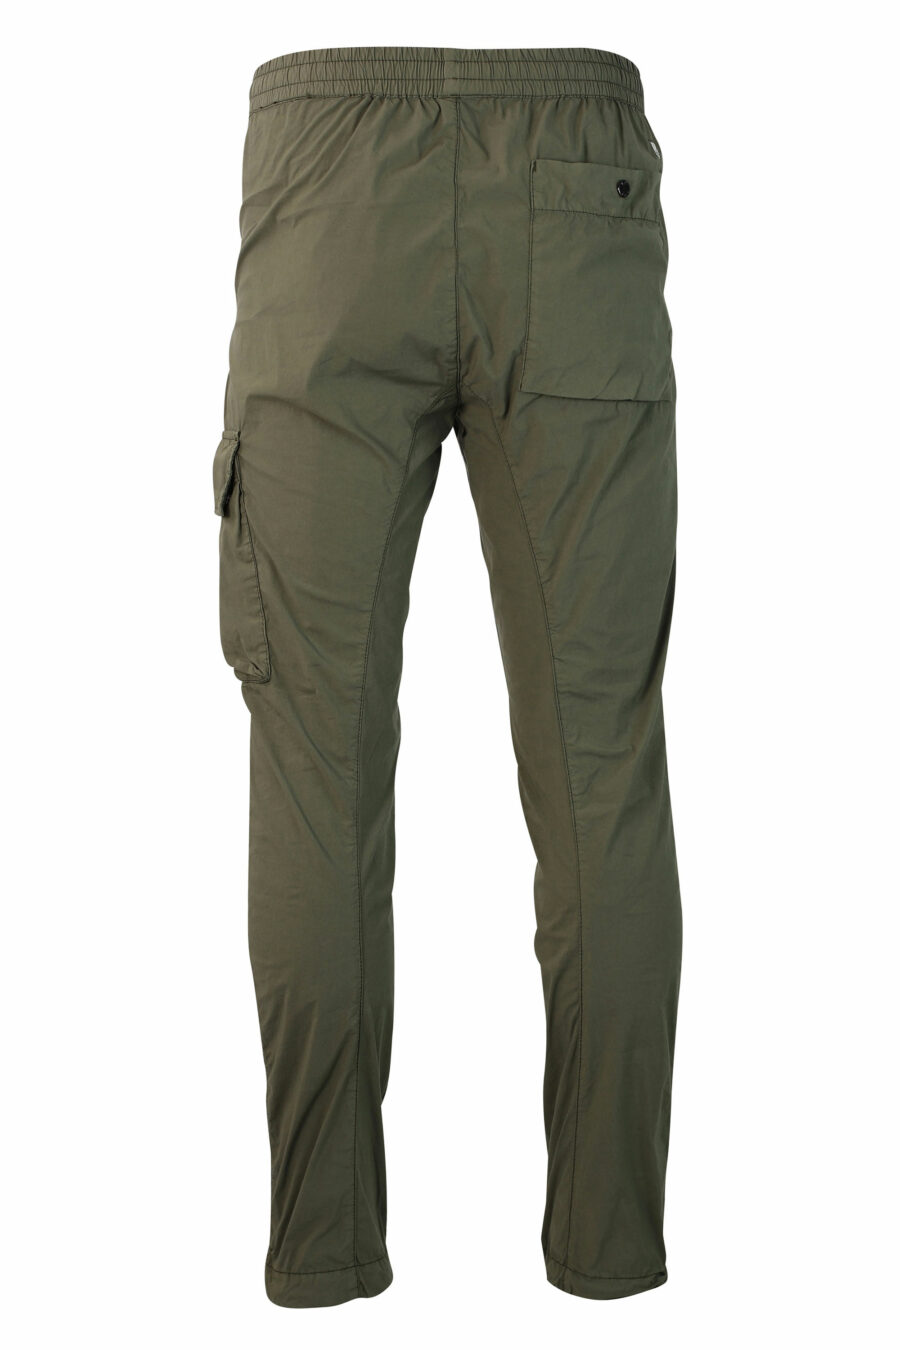 C.P. Company - Pantalón verde militar con minilogo circular